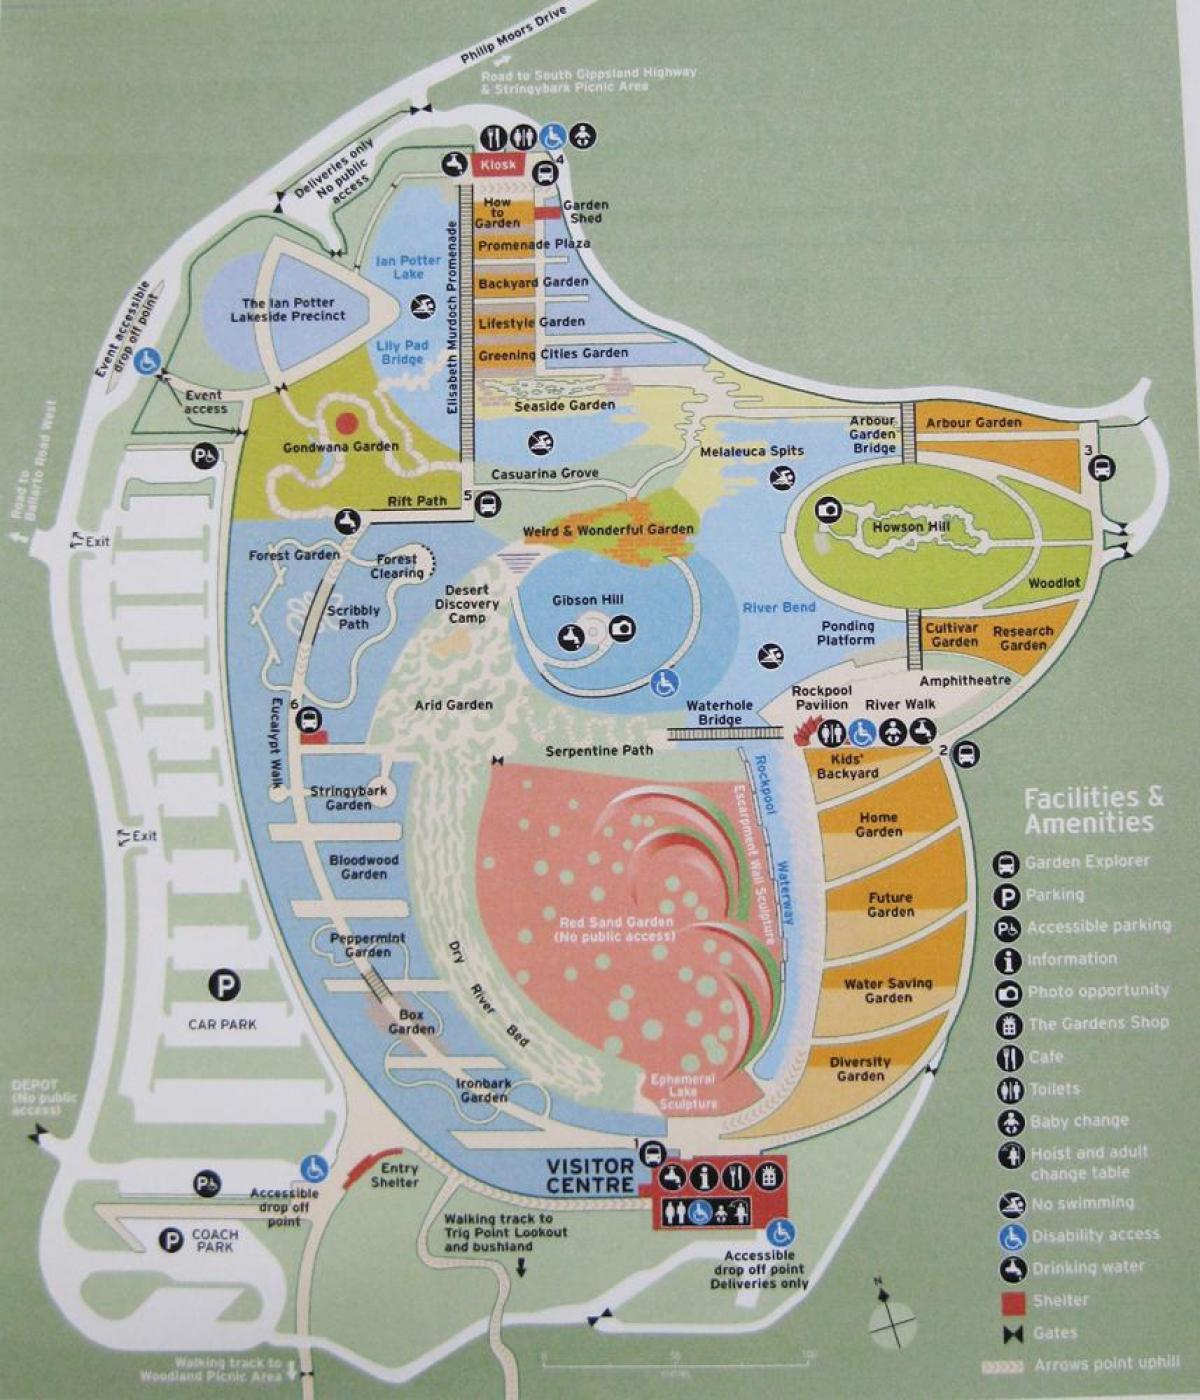 Royal botanic gardens žemėlapyje